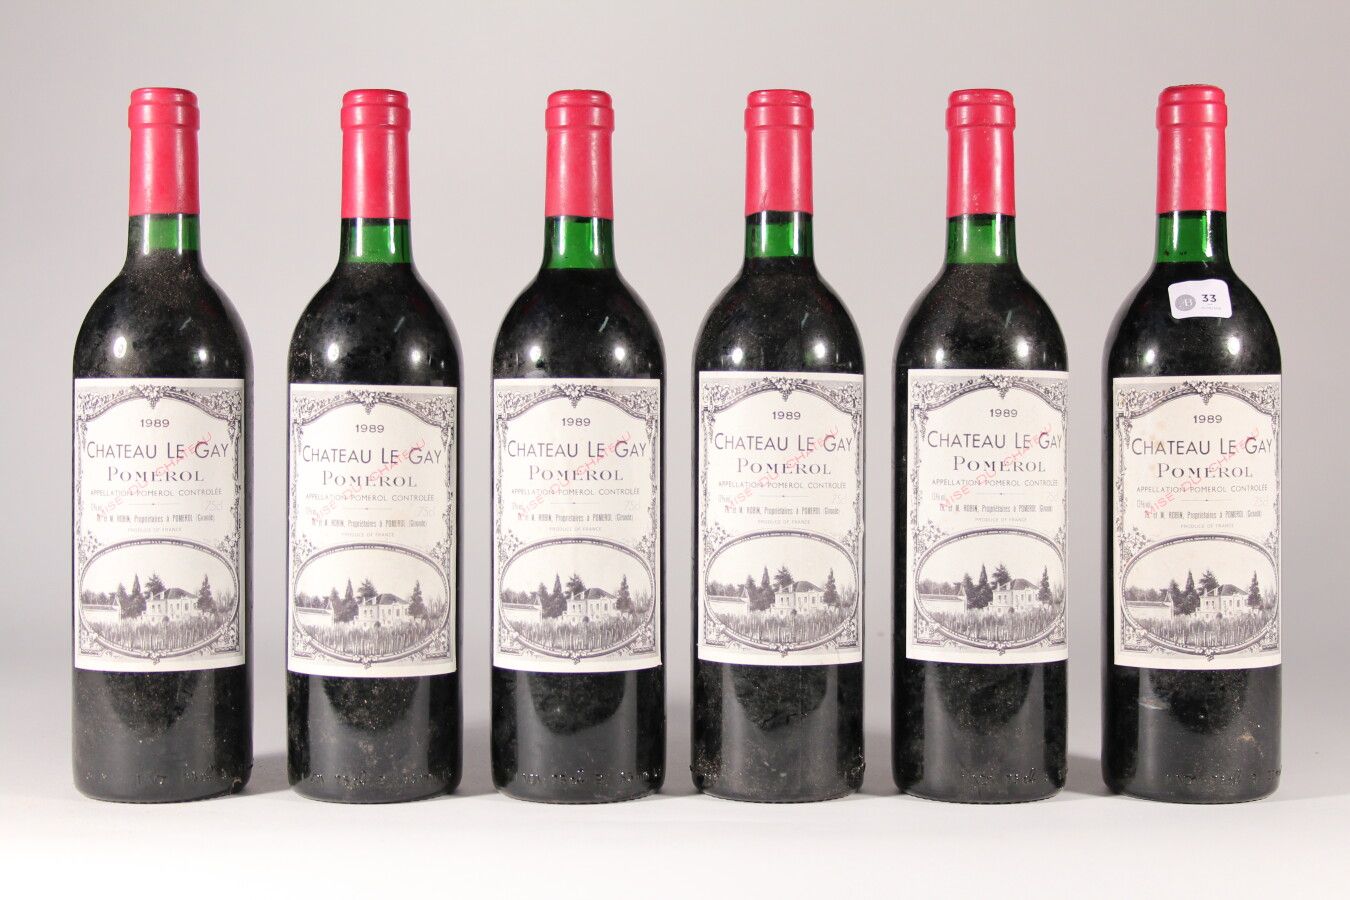 Null 1989 - Château Le Gay

Pomerol rosso - 6 bottiglie (collo basso)